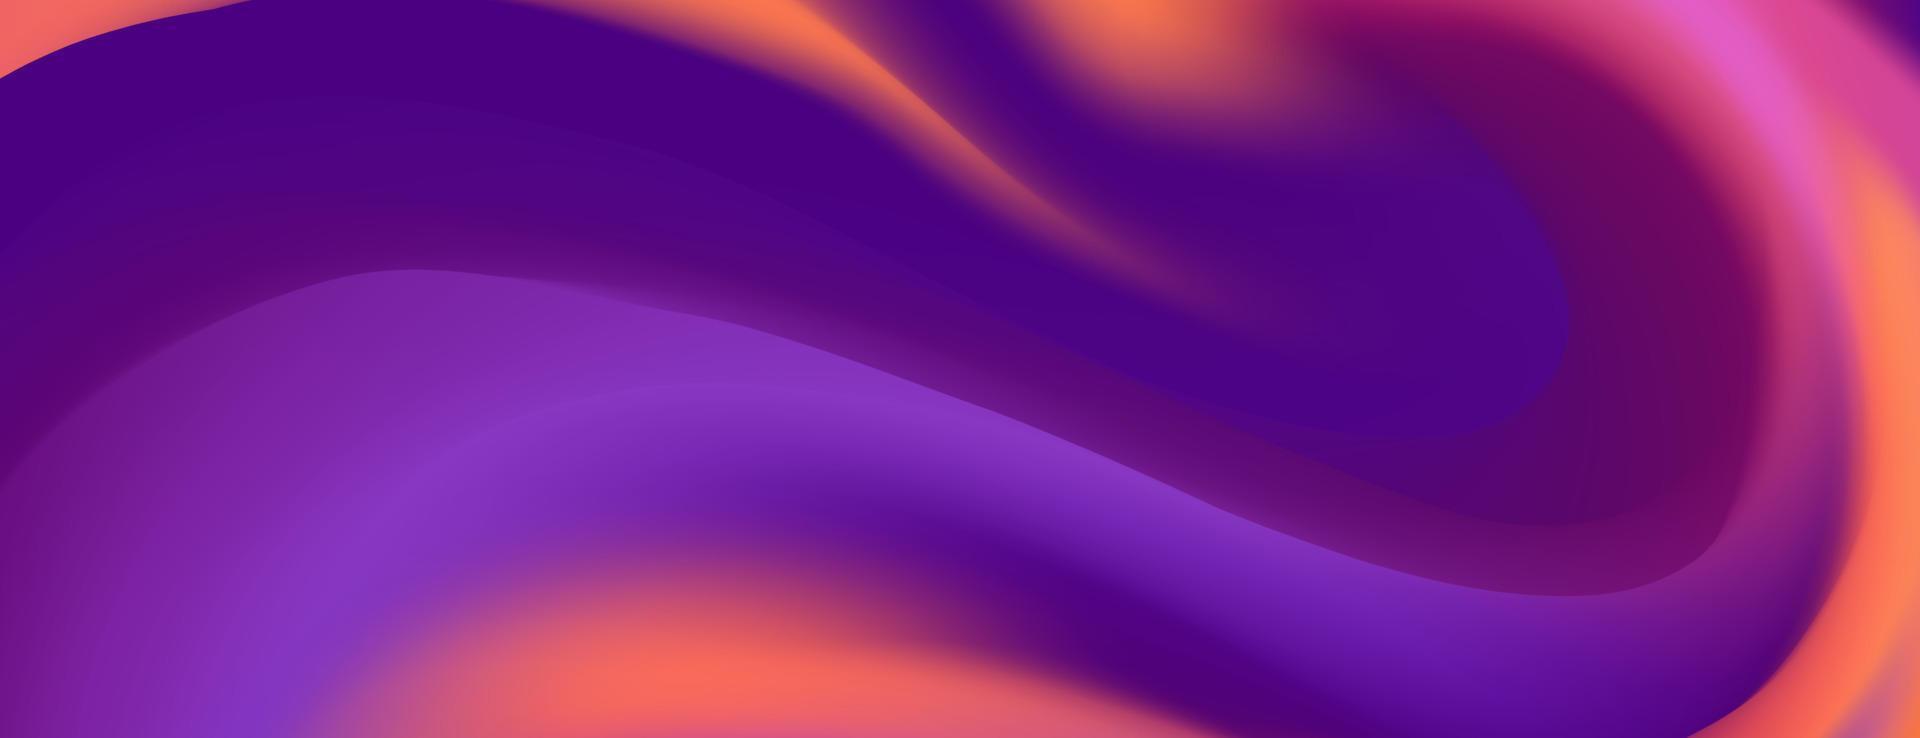 abstract kleurrijk paars oranje blauw vloeistof Golf achtergrond vector